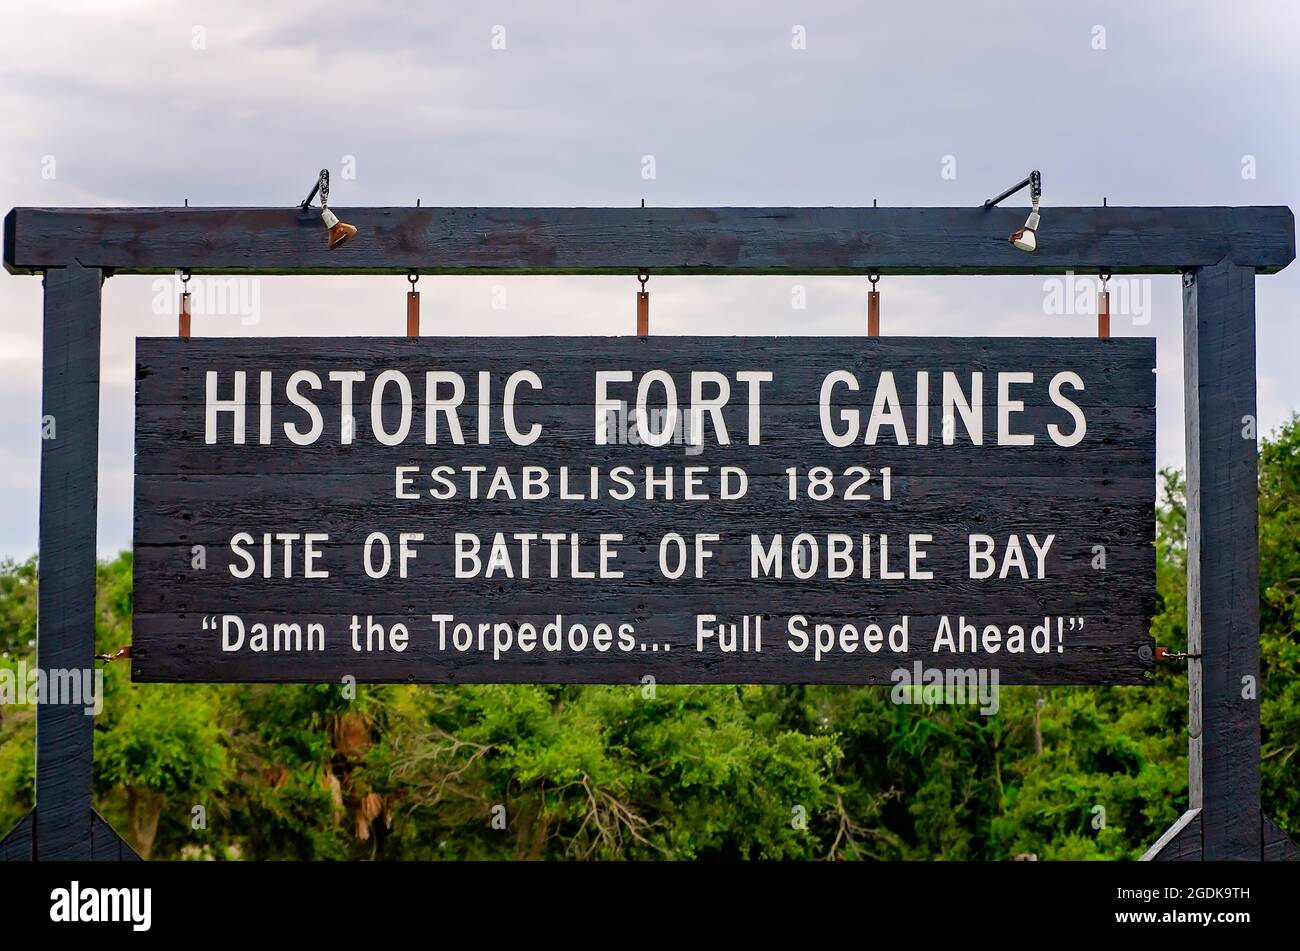 L'insegna di Fort Gaines è raffigurata, 12 agosto 2021, a Dauphin Island, Alabama. L'assedio di Fort Gaines avvenne durante la guerra civile americana. Foto Stock